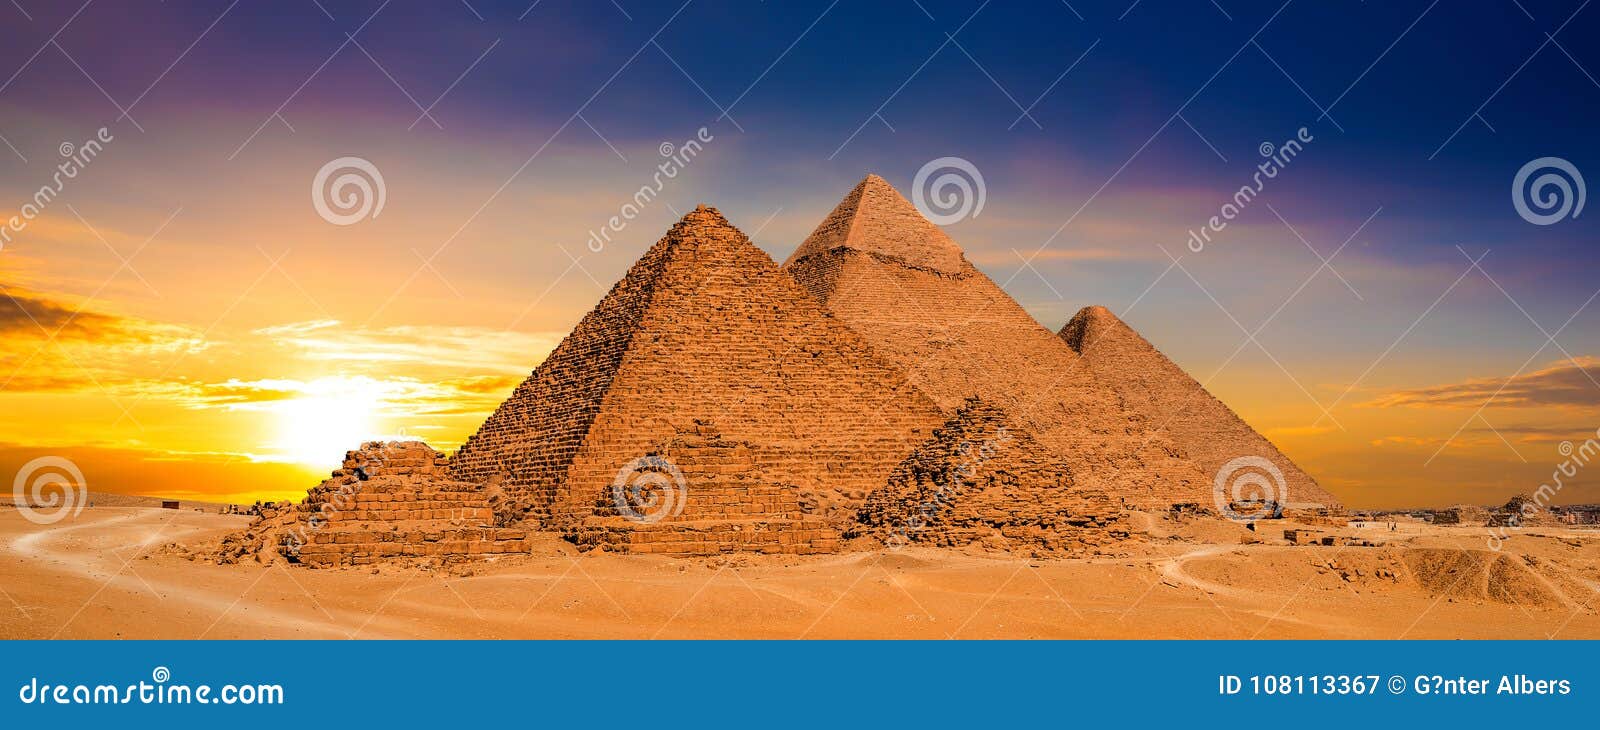 sunset in egypt